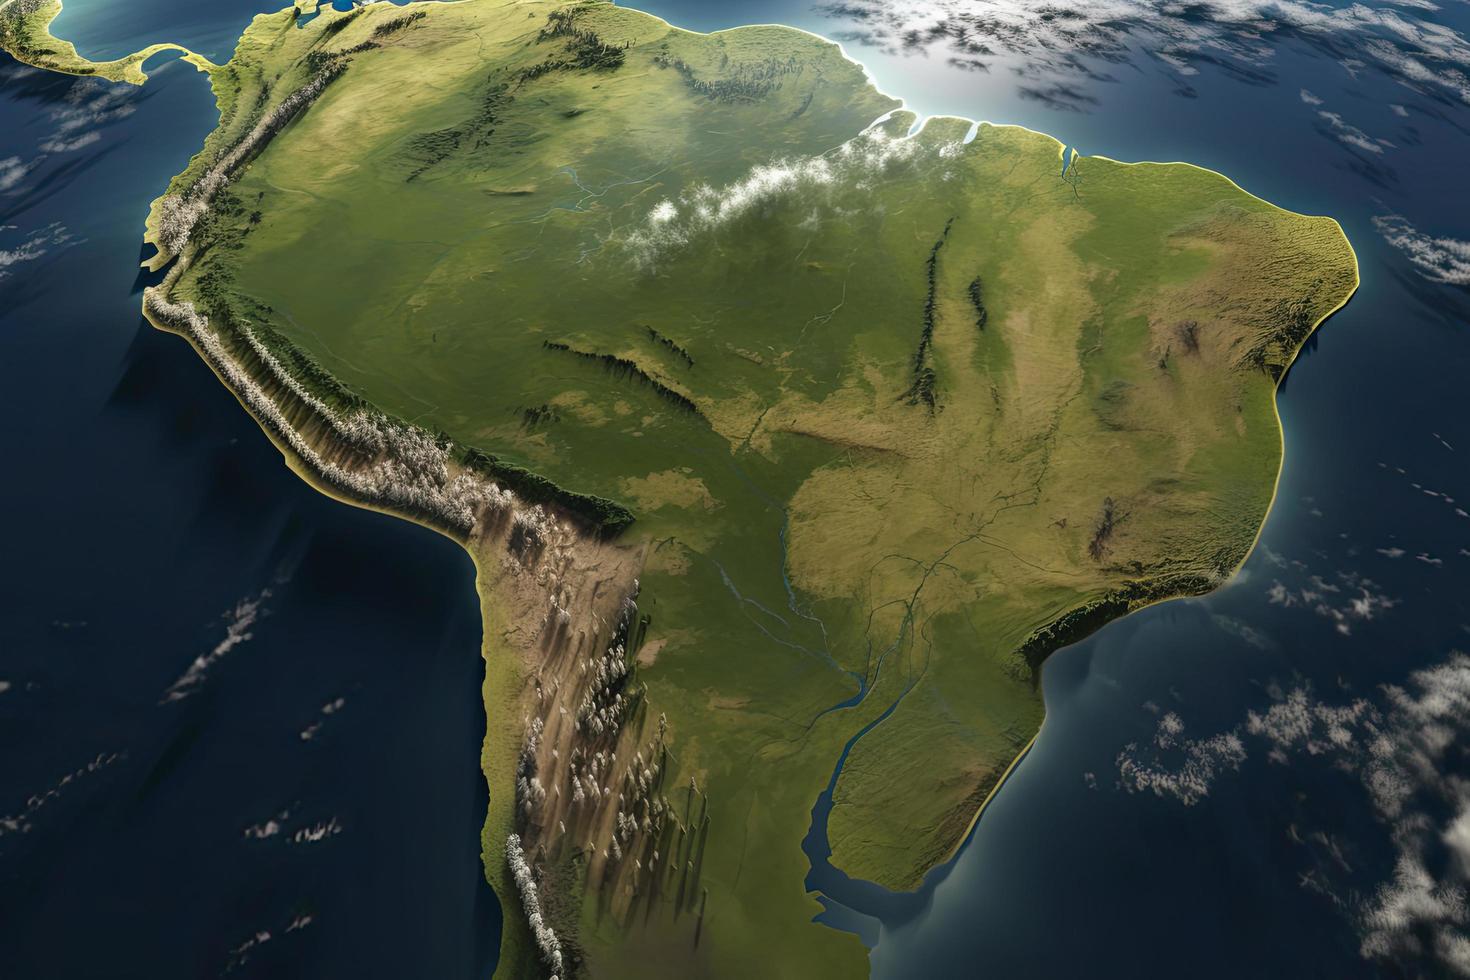 surface de le planète Terre vu de une Satellite, concentré sur Sud Amérique, andes cordillère et amazone forêt tropicale photo